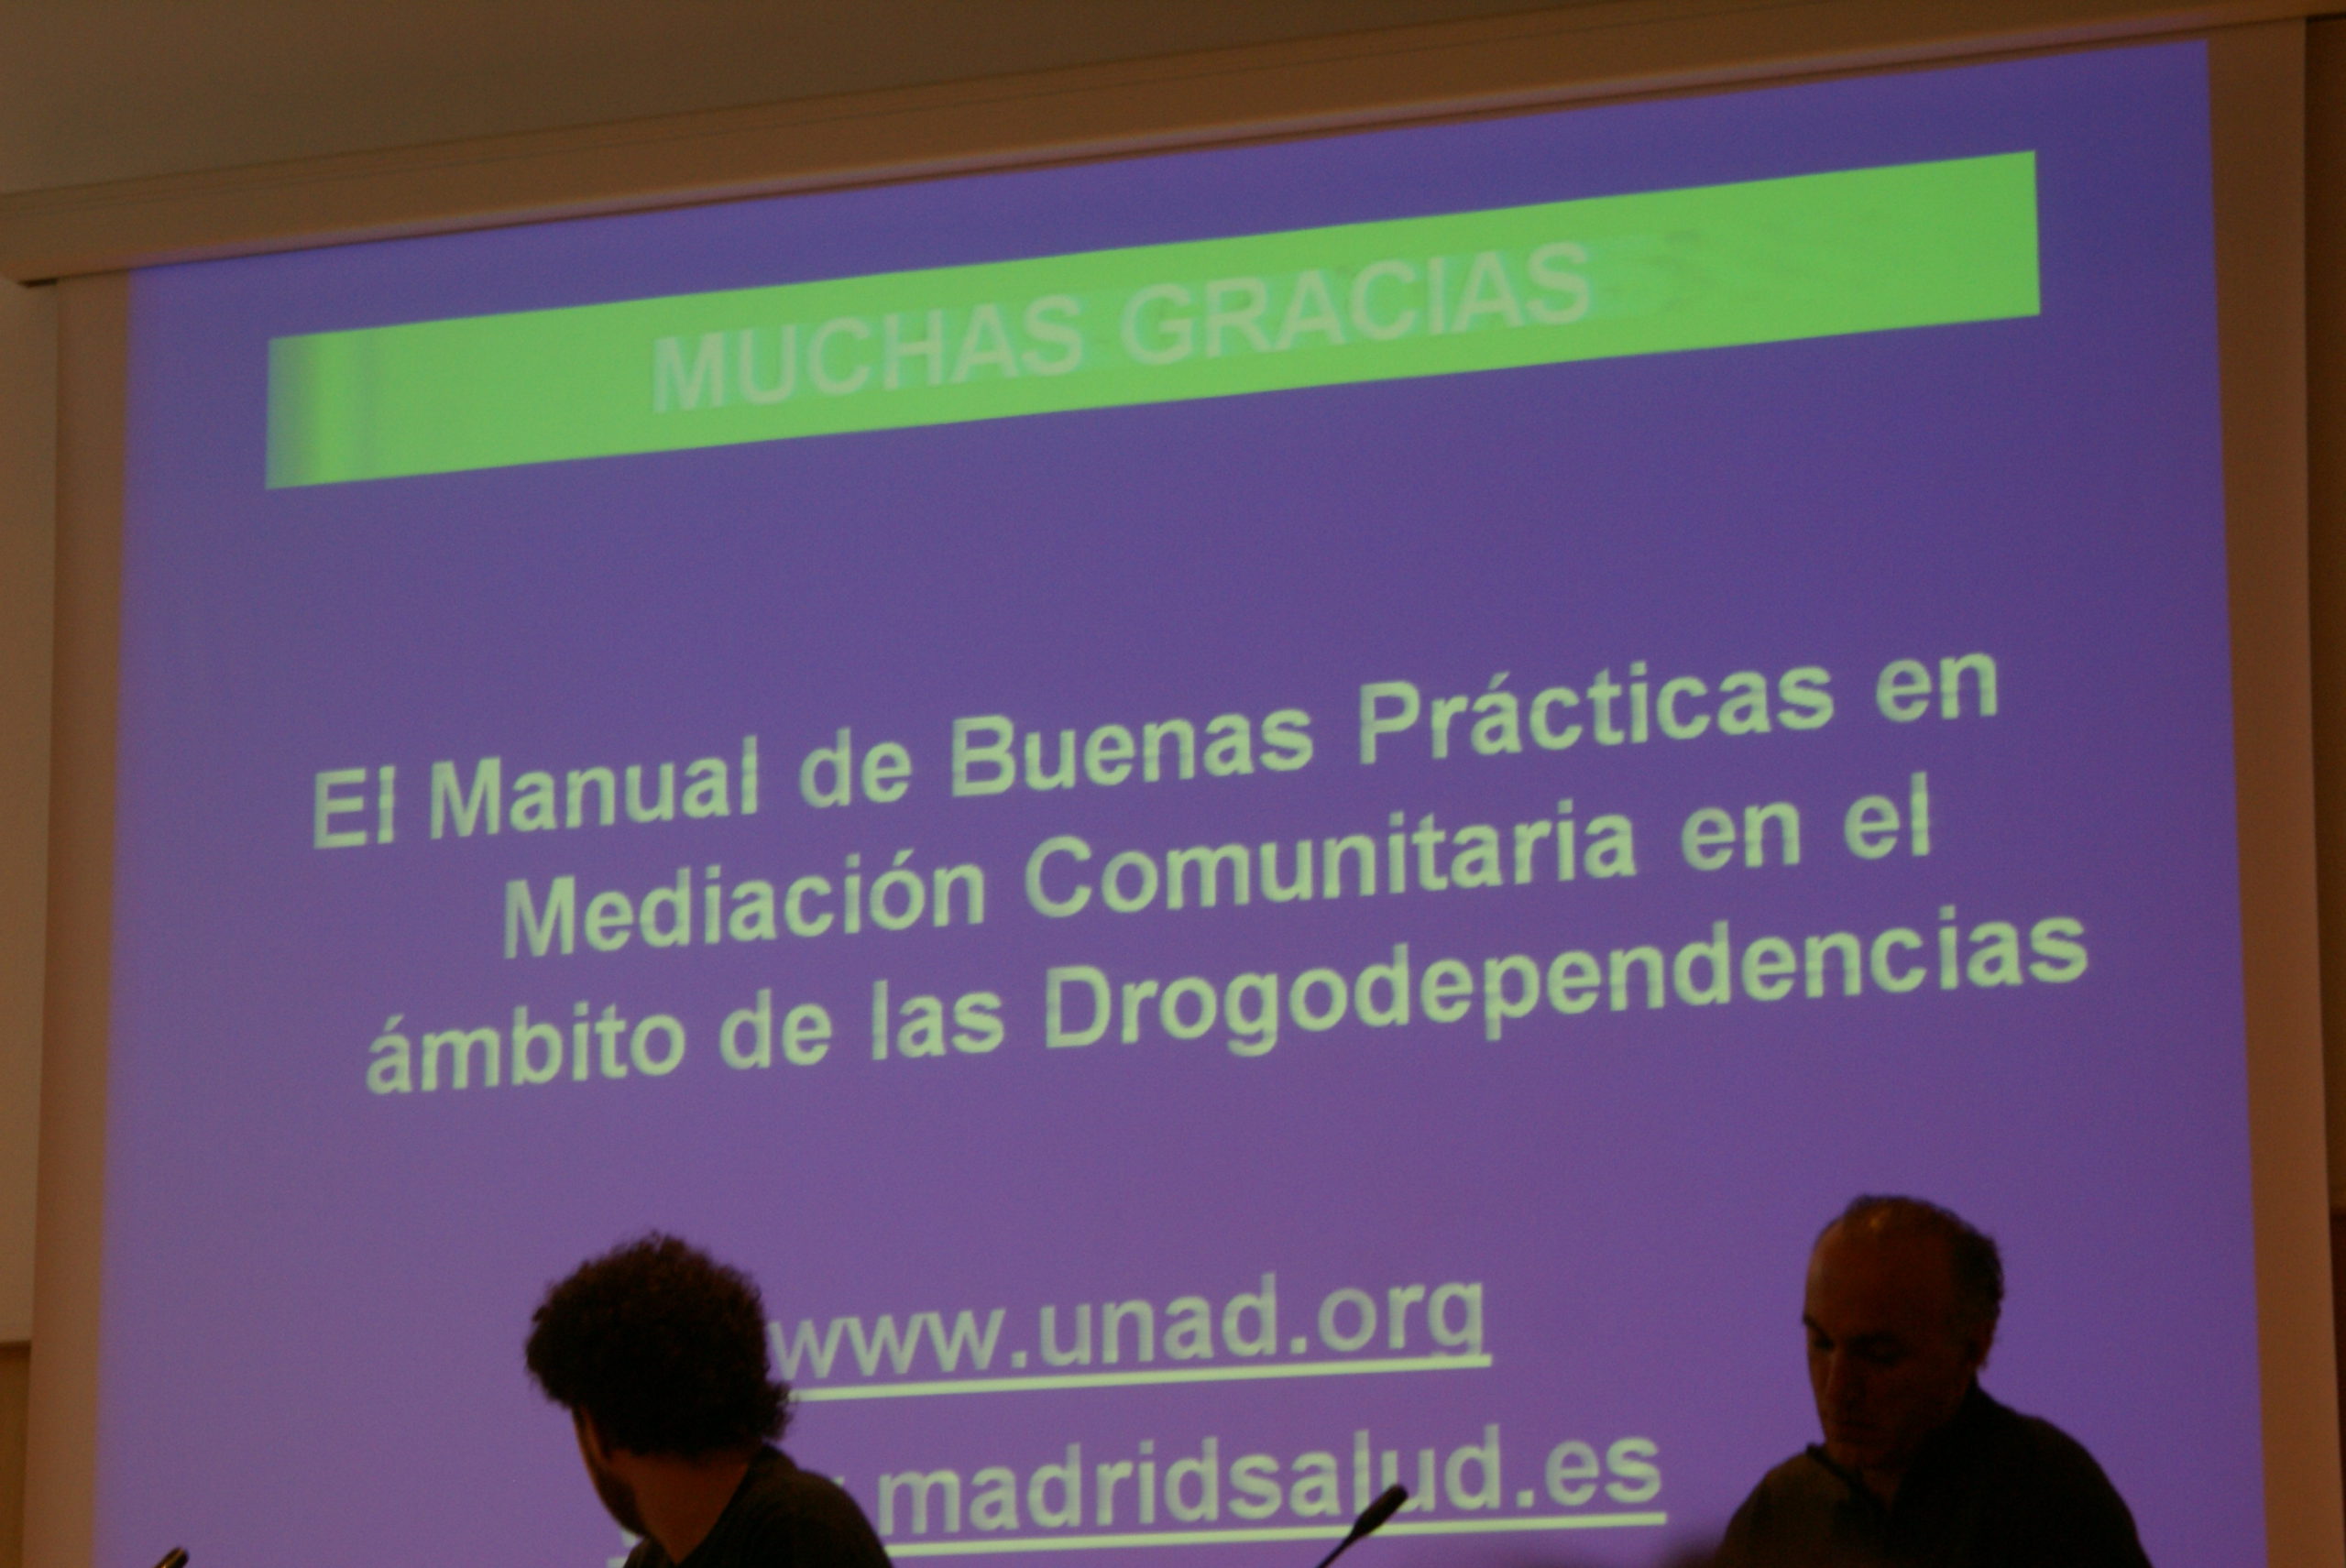 UNAD presento en Barcelona el Manual de Buenas Prácticas en mediación comunitaria en drogodependencias